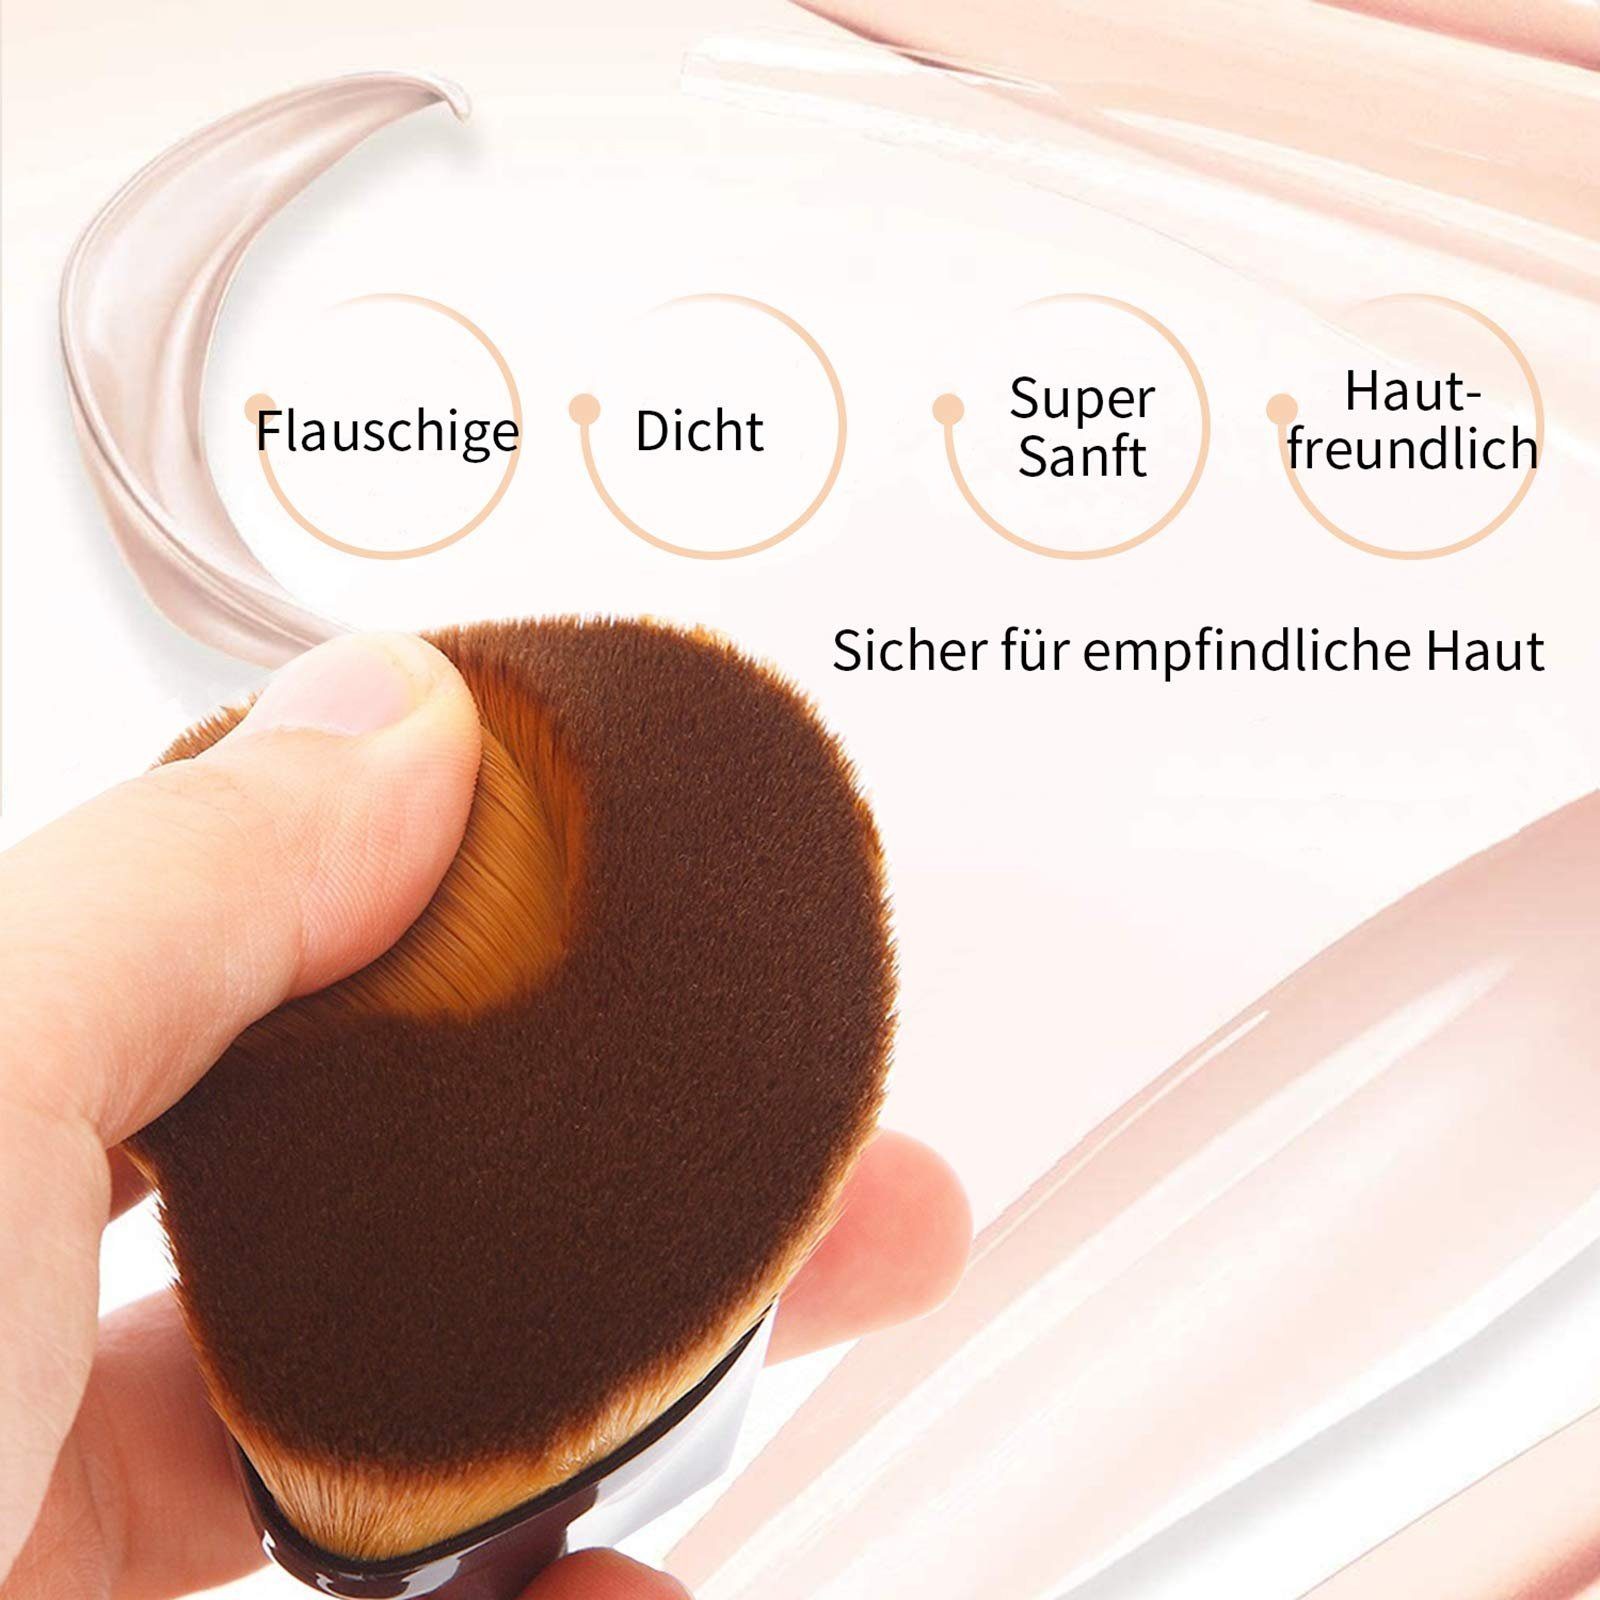 Make-up Haiaveng Pinsel Flat Groove Make-up von Flüssigkeit, Creme, Blush Premium zum Gesicht Foundation Mischen Stick Concealer Pinsel Pinsel Top Design, Pinsel